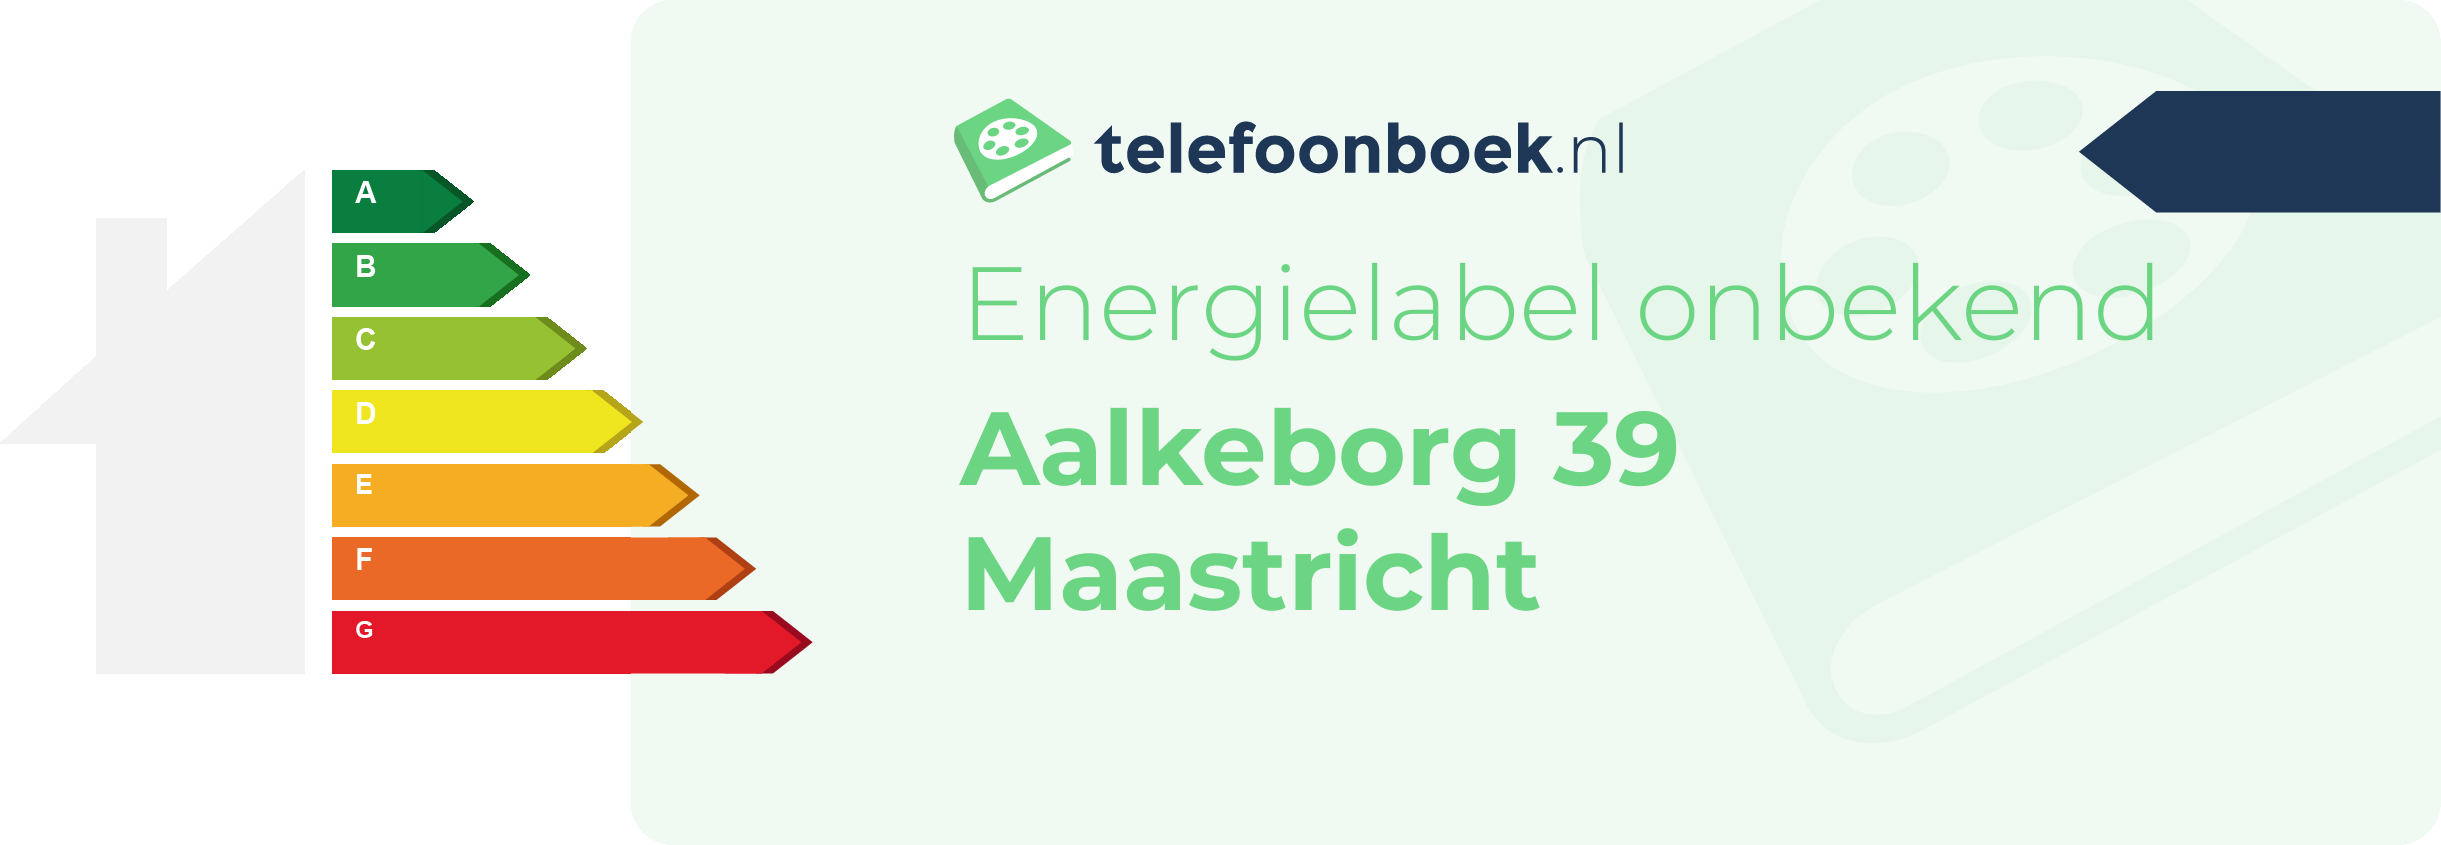 Energielabel Aalkeborg 39 Maastricht